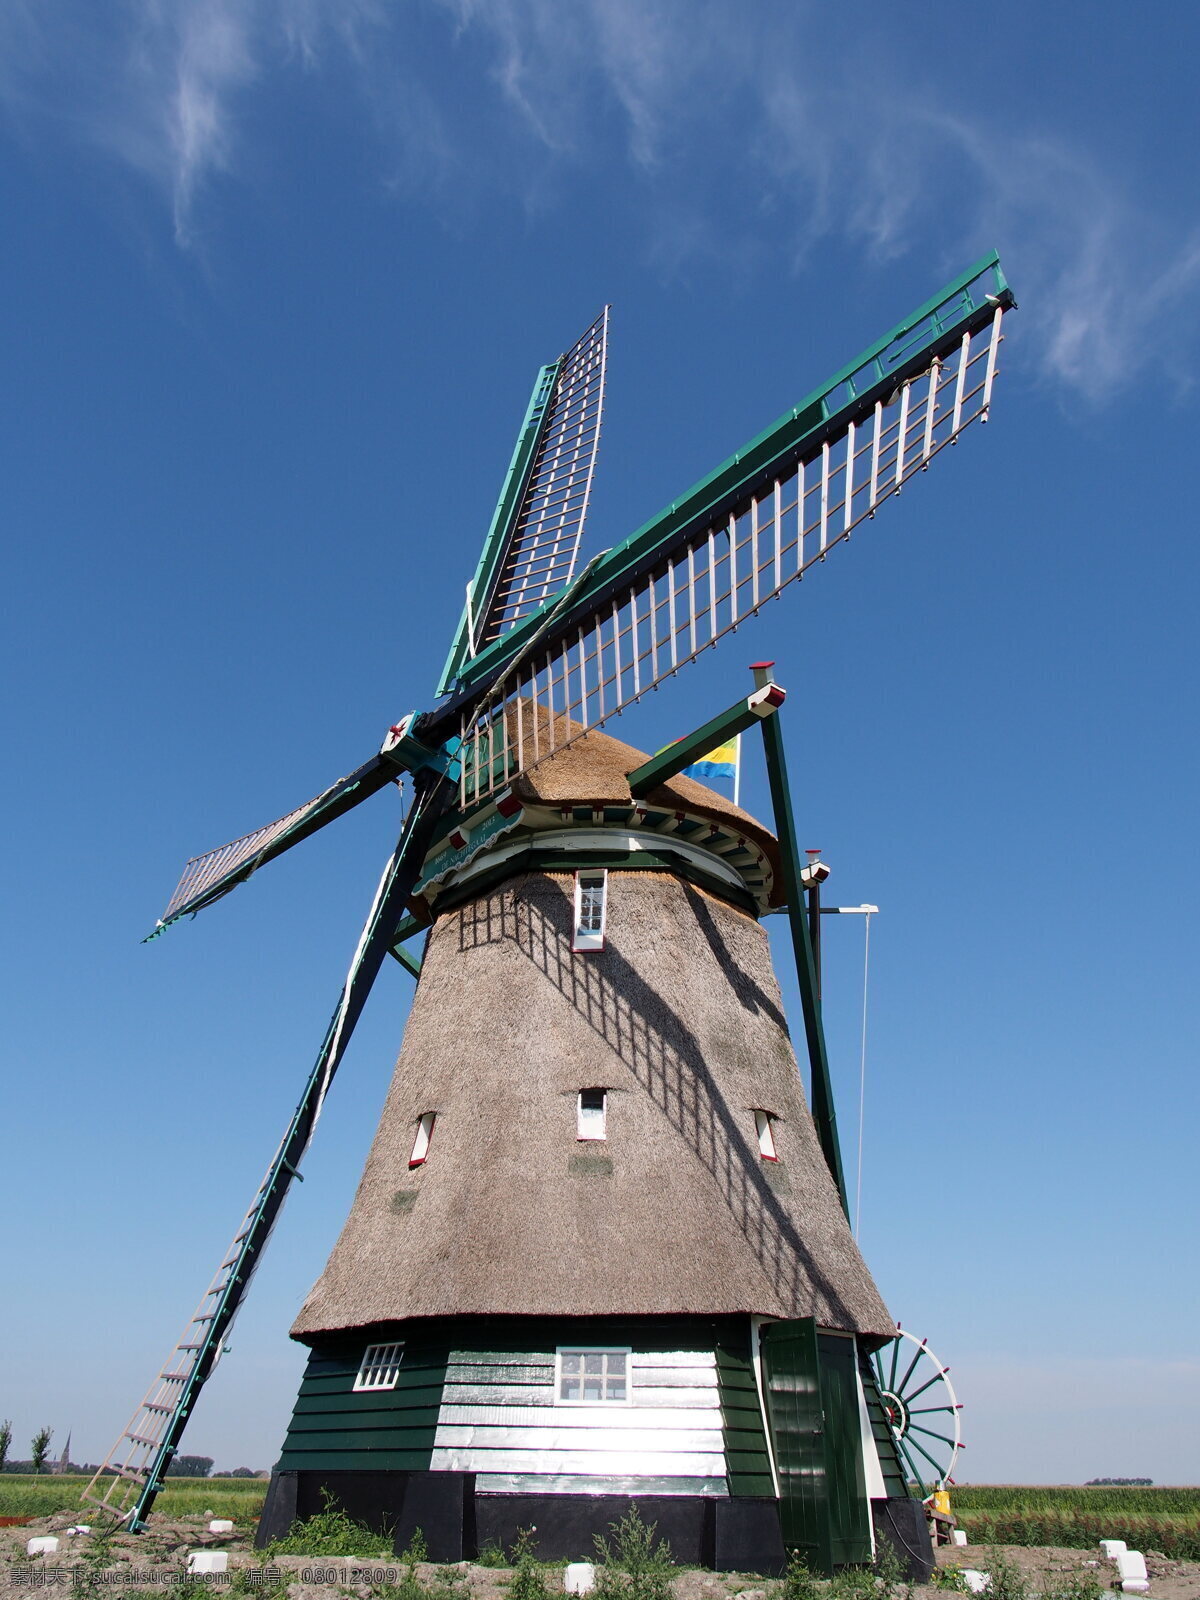 荷兰风车 风车 大风车 发电风车 风能 发电设备